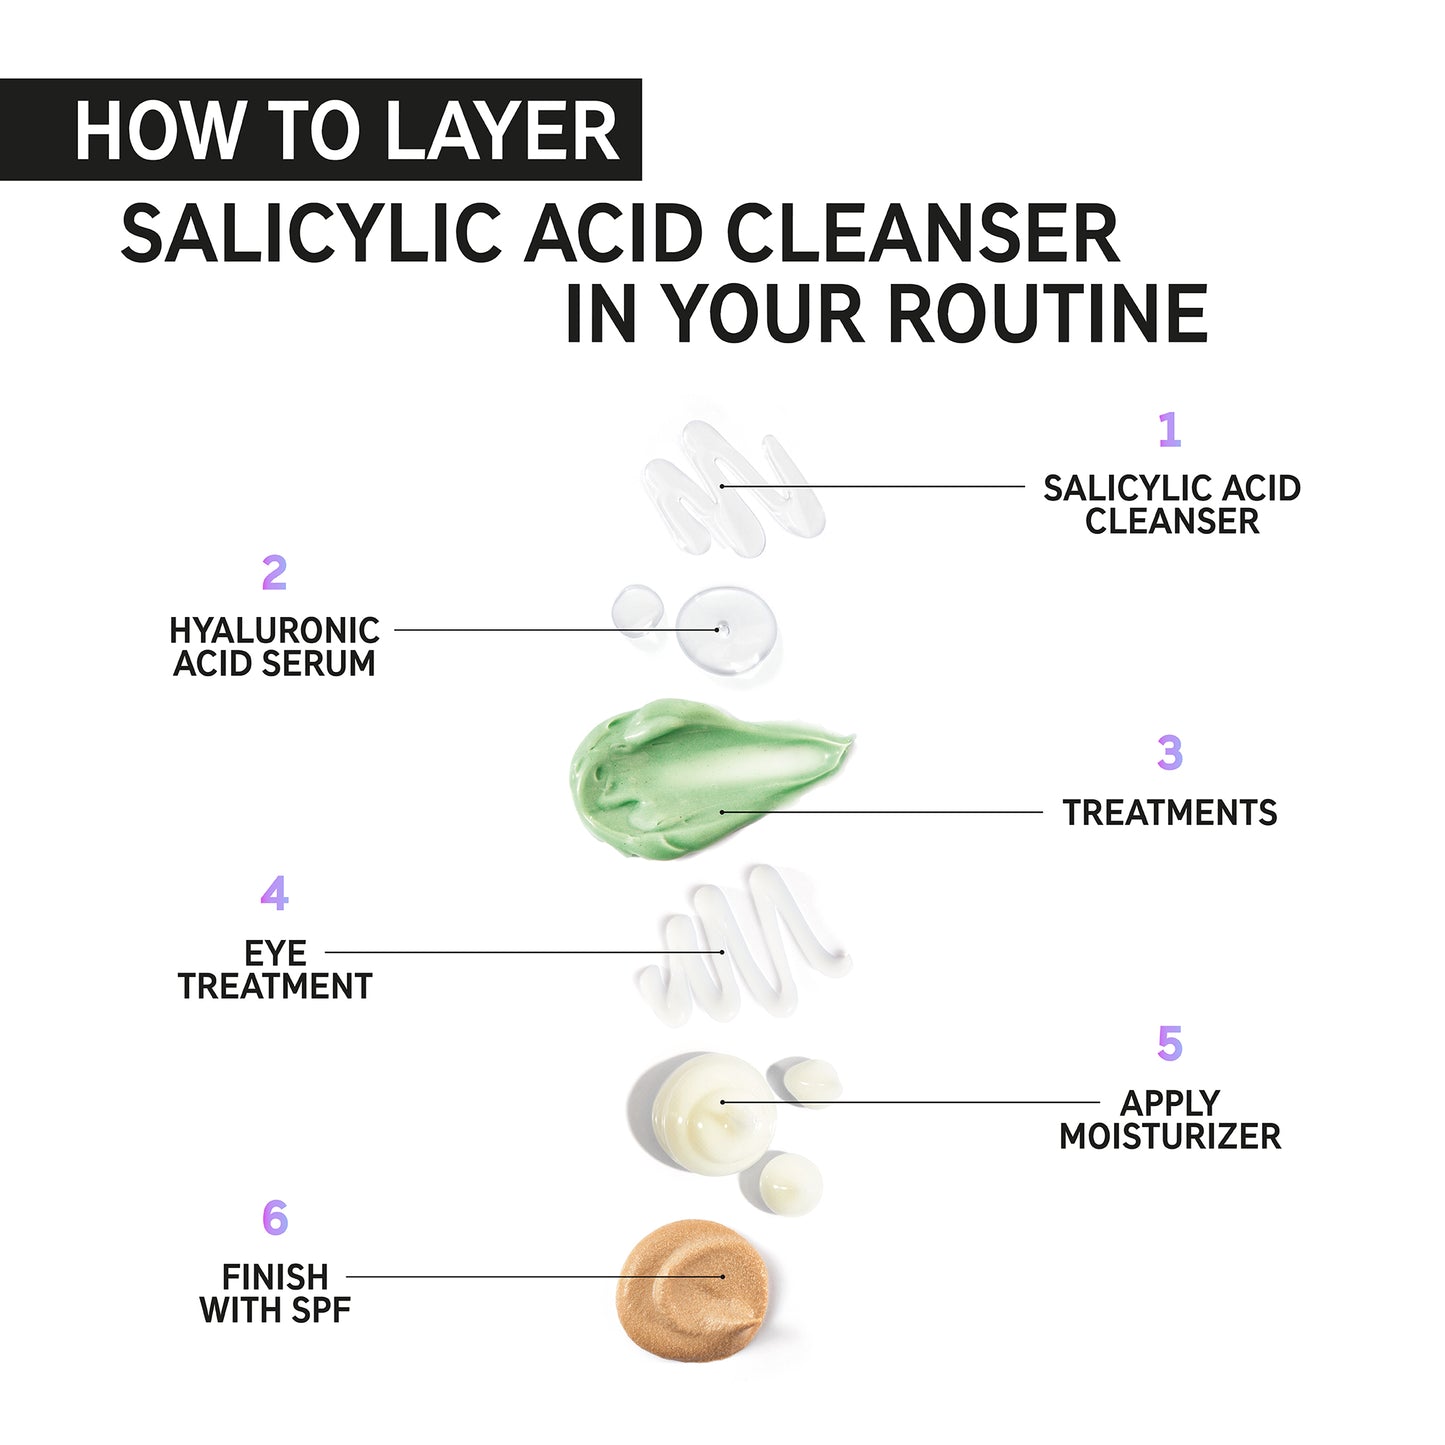 Inkey List Salicylic Acid Cleanser